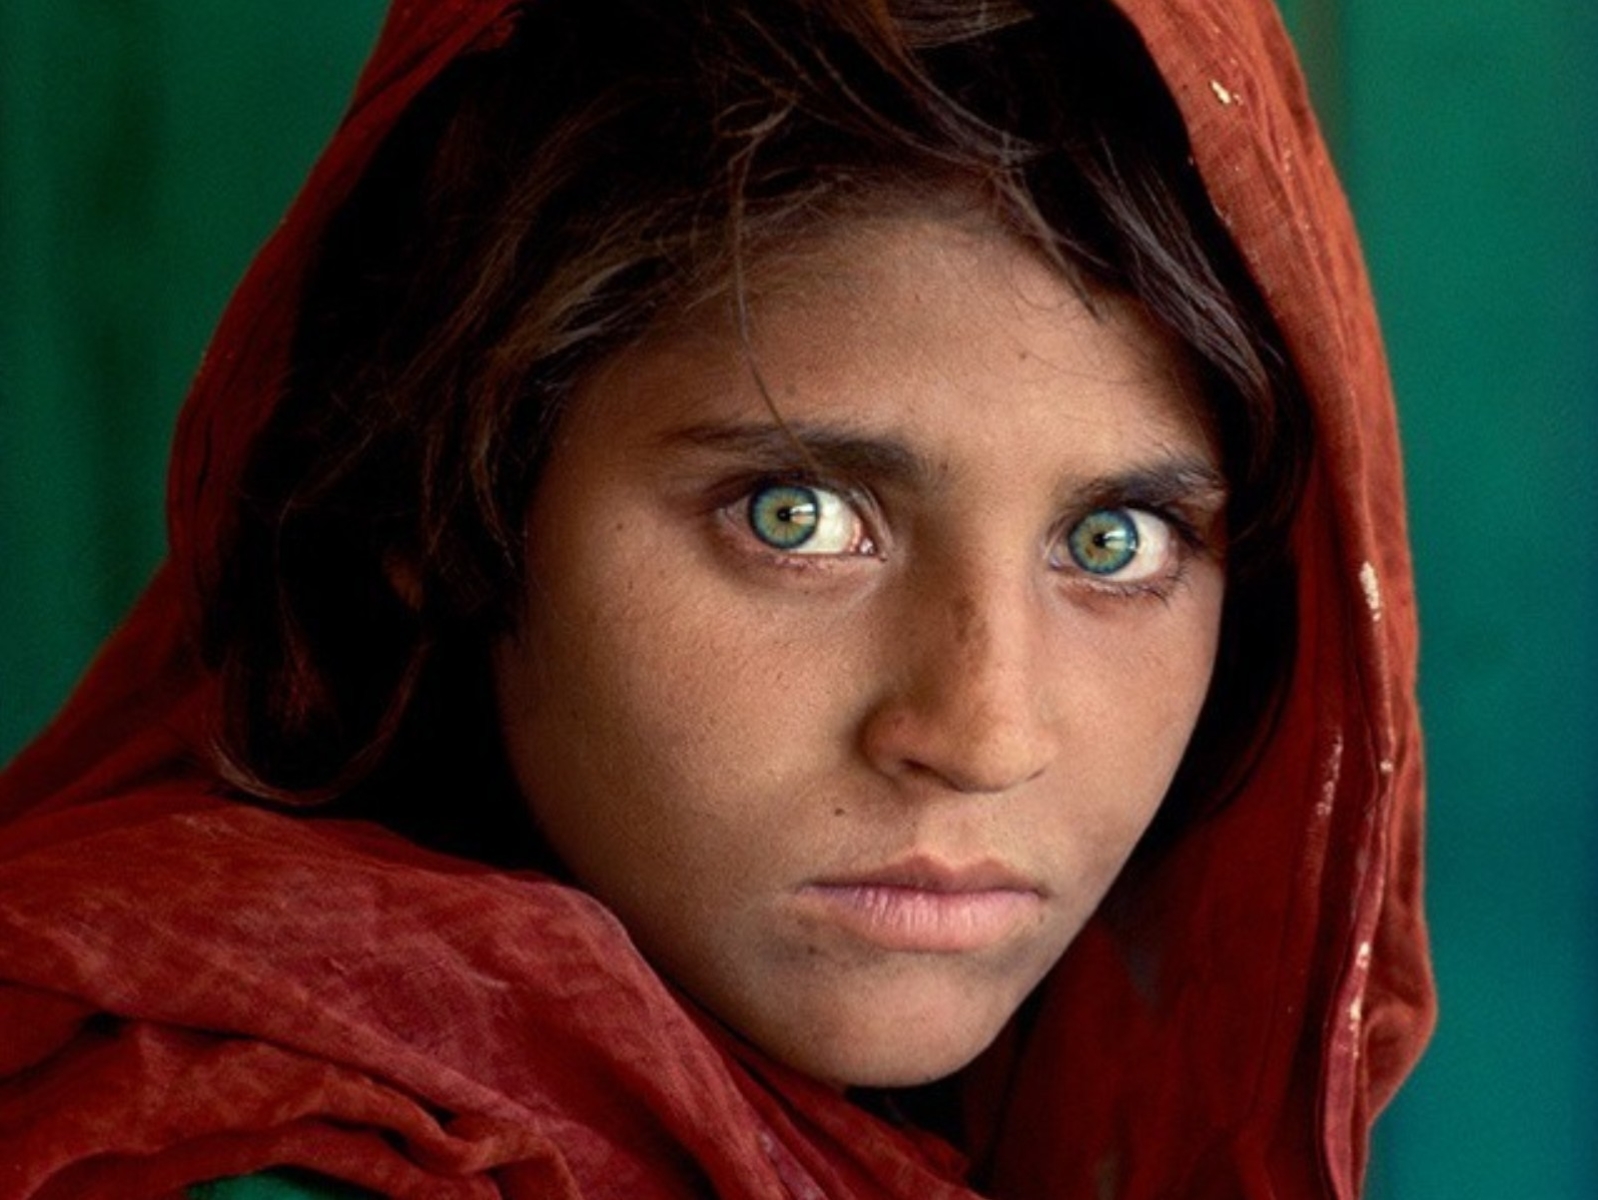 「阿富汗女孩」Sharbat Gula 現況曝光！現年 49 歲的她依然被戰亂生活苦苦折磨⋯